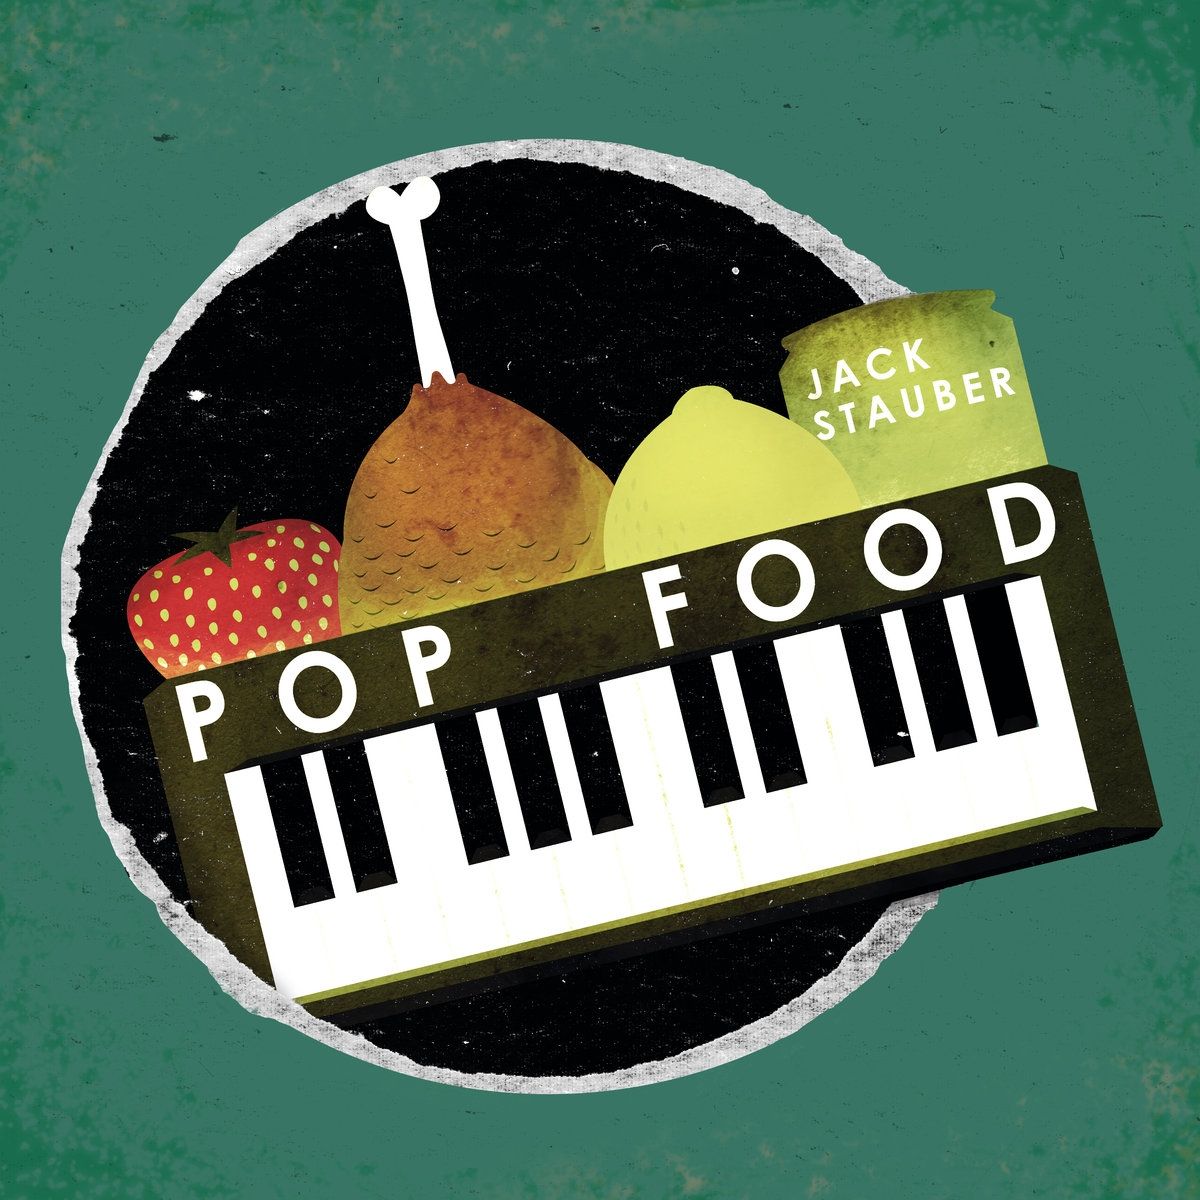 Imagem do álbum Pop Food do(a) artista Jack Stauber